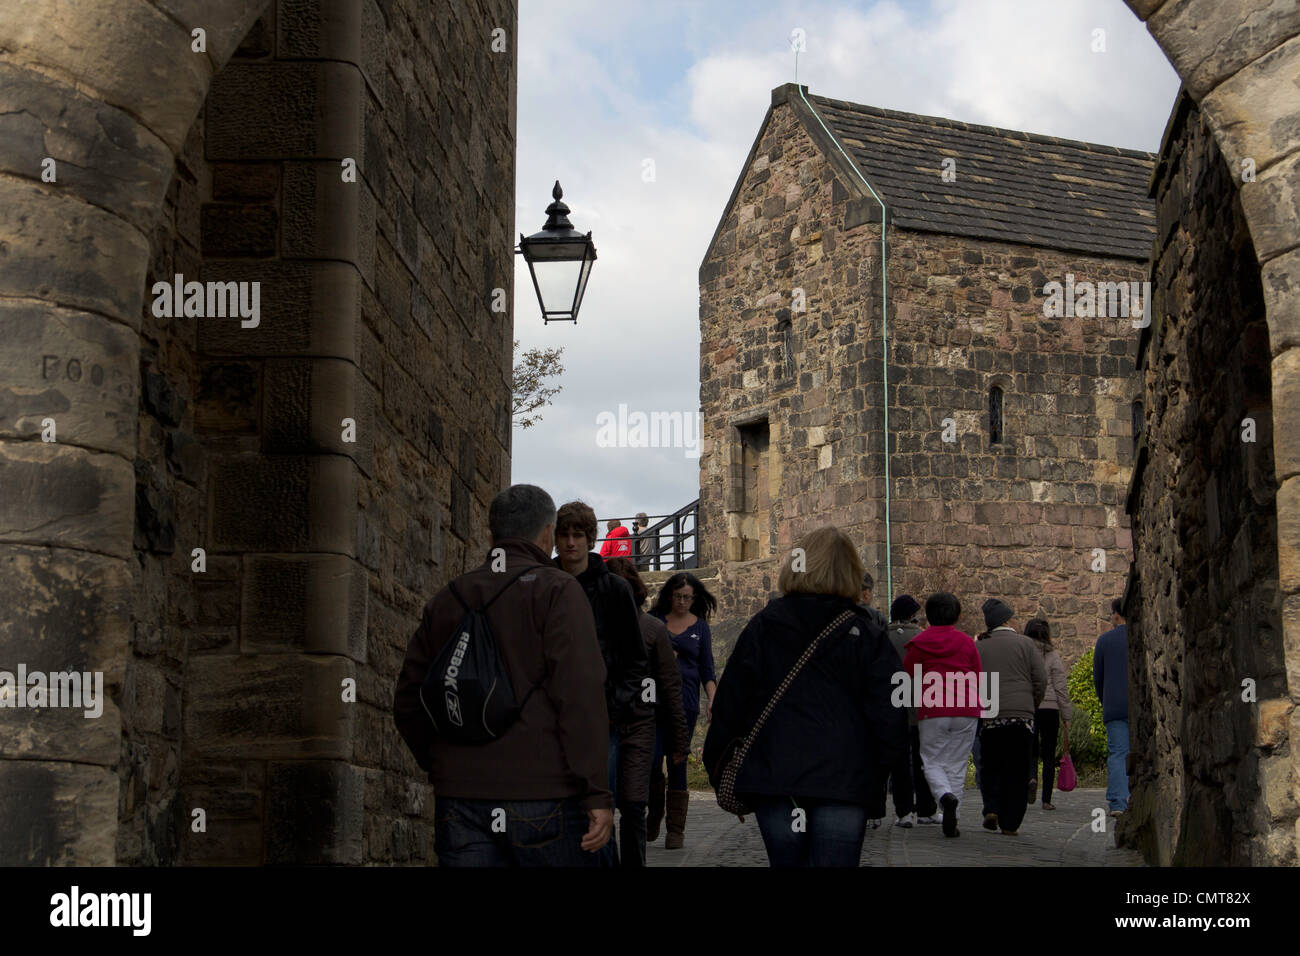 Les touristes de passage à travers un passage étroit entre un certain nombre de vieux bâtiments historiques à l'intérieur du château d'Édimbourg Banque D'Images